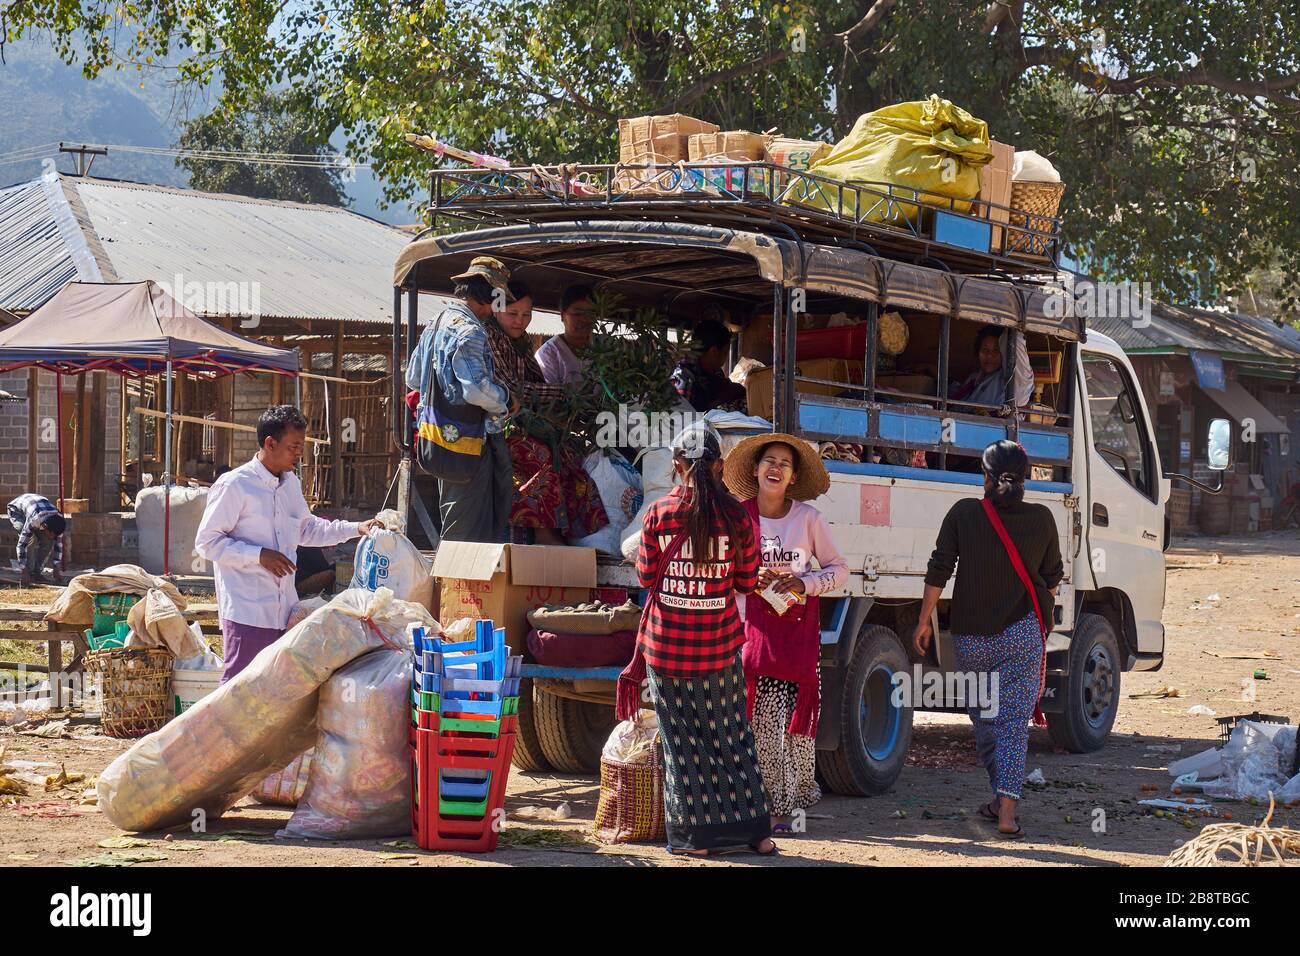 Recogida en Beladen, Leute verlassen den Markt von Indein, Dorf Indein, Inle See, Shan-Staat, Myanmar Foto de stock